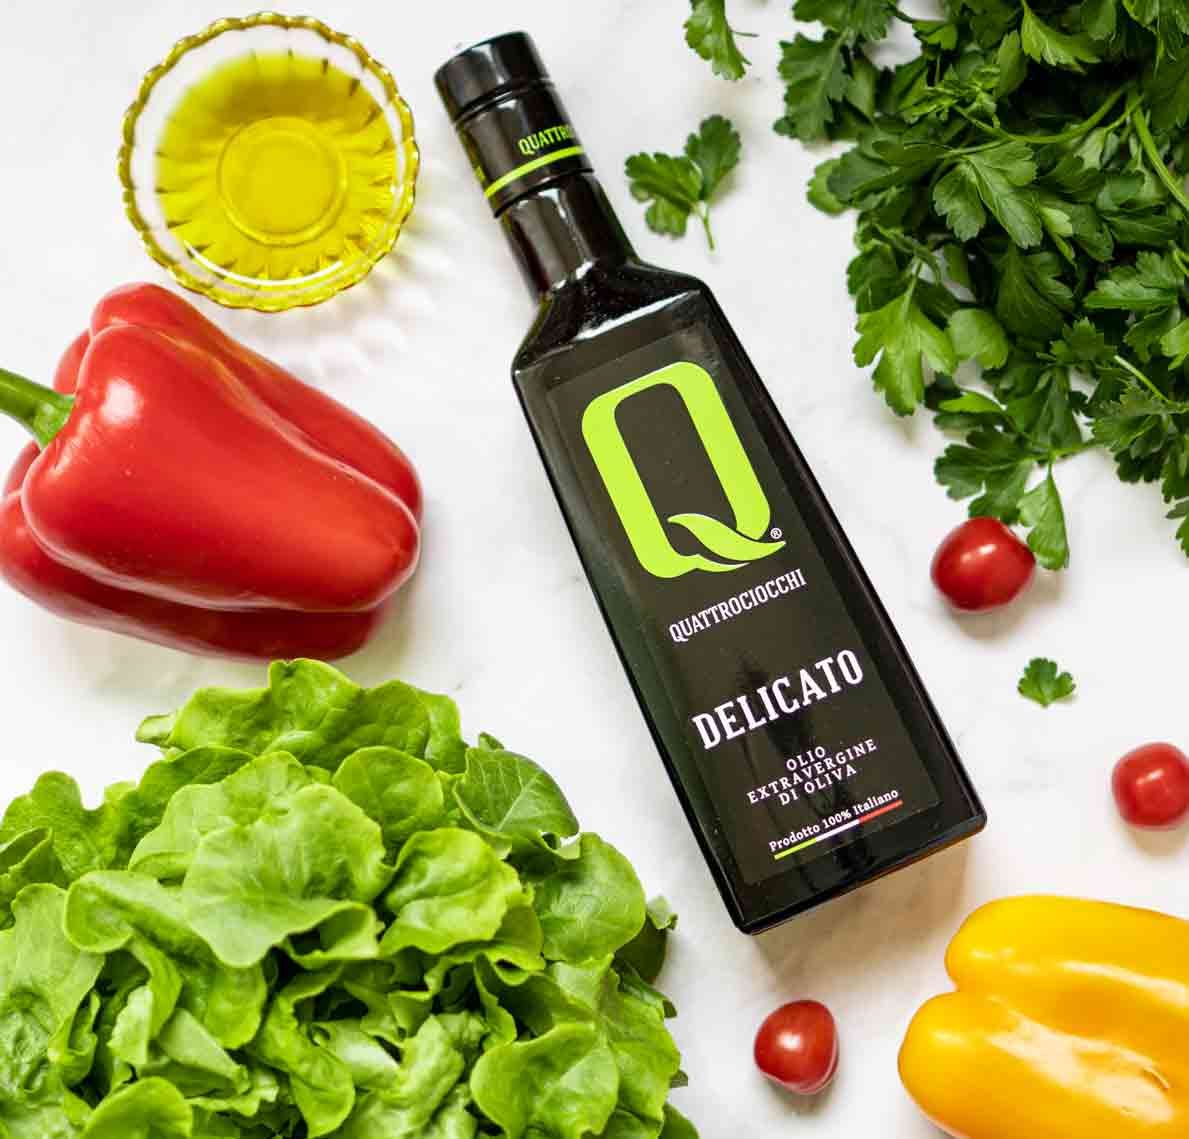 Quattrociocchi Delicato natives Olivenöl extra mit Salat